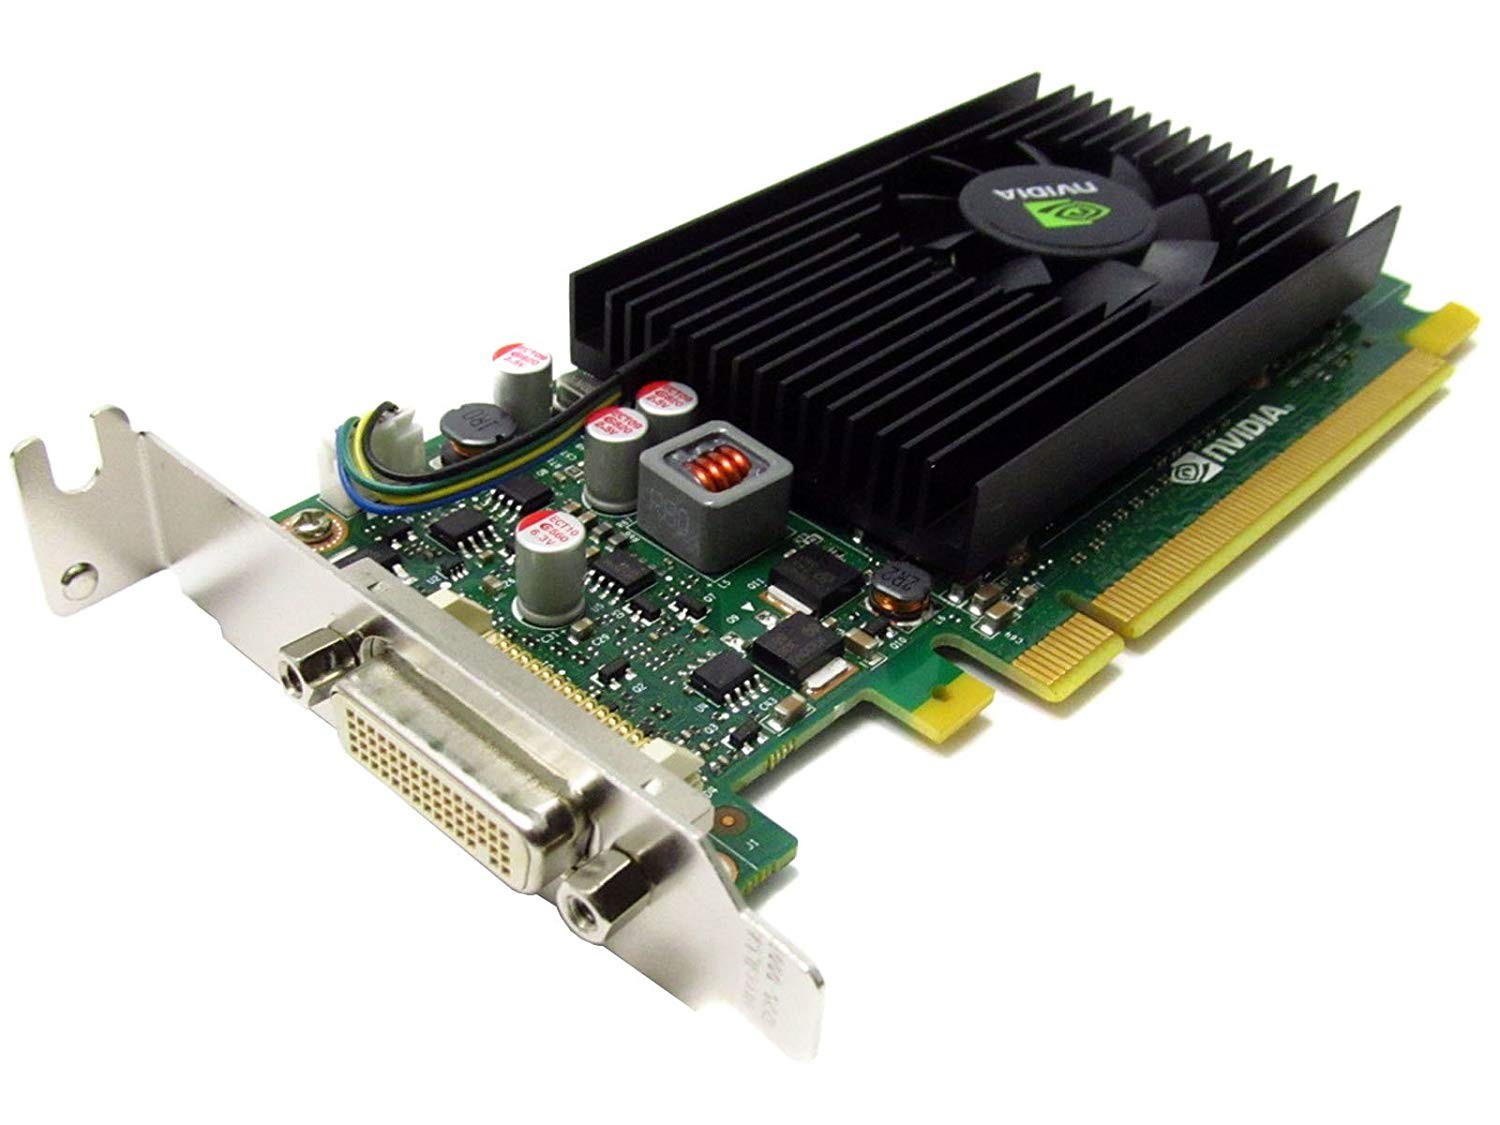 Placa video Nvidia NVS 315, 1GB DDR3, 64-bit, Low Profile + Cablu DMS-59 cu doua iesiri VGA